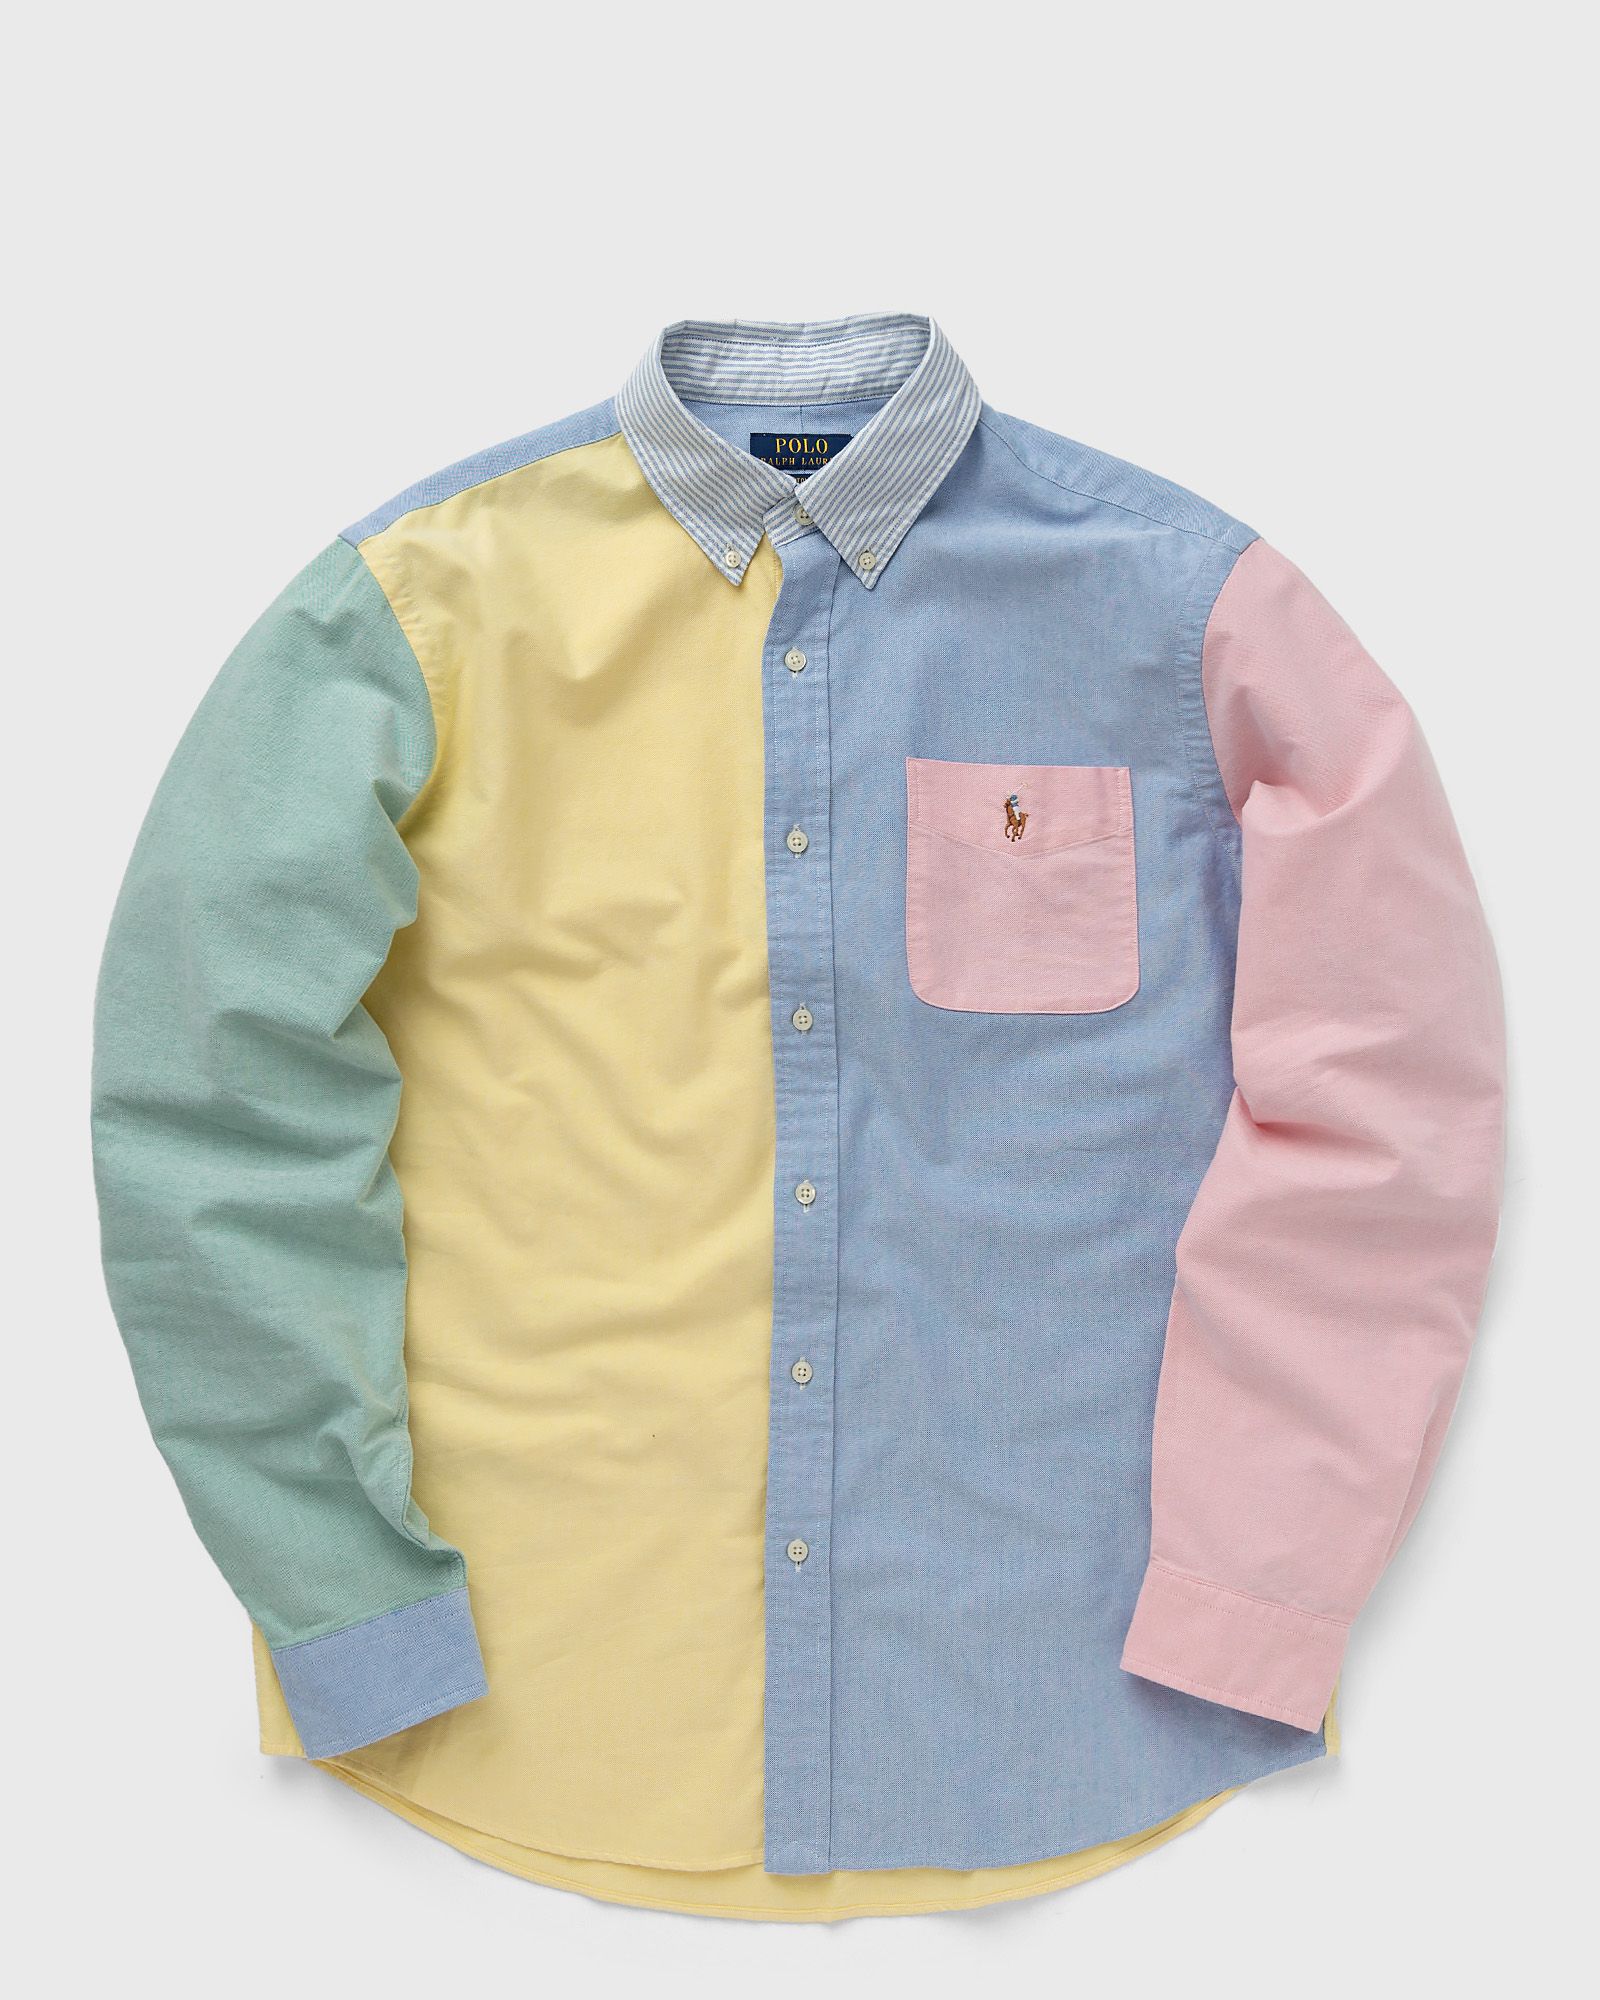 Polo Ralph Lauren - long sleeve-sport shirt men longsleeves multi in größe:xl